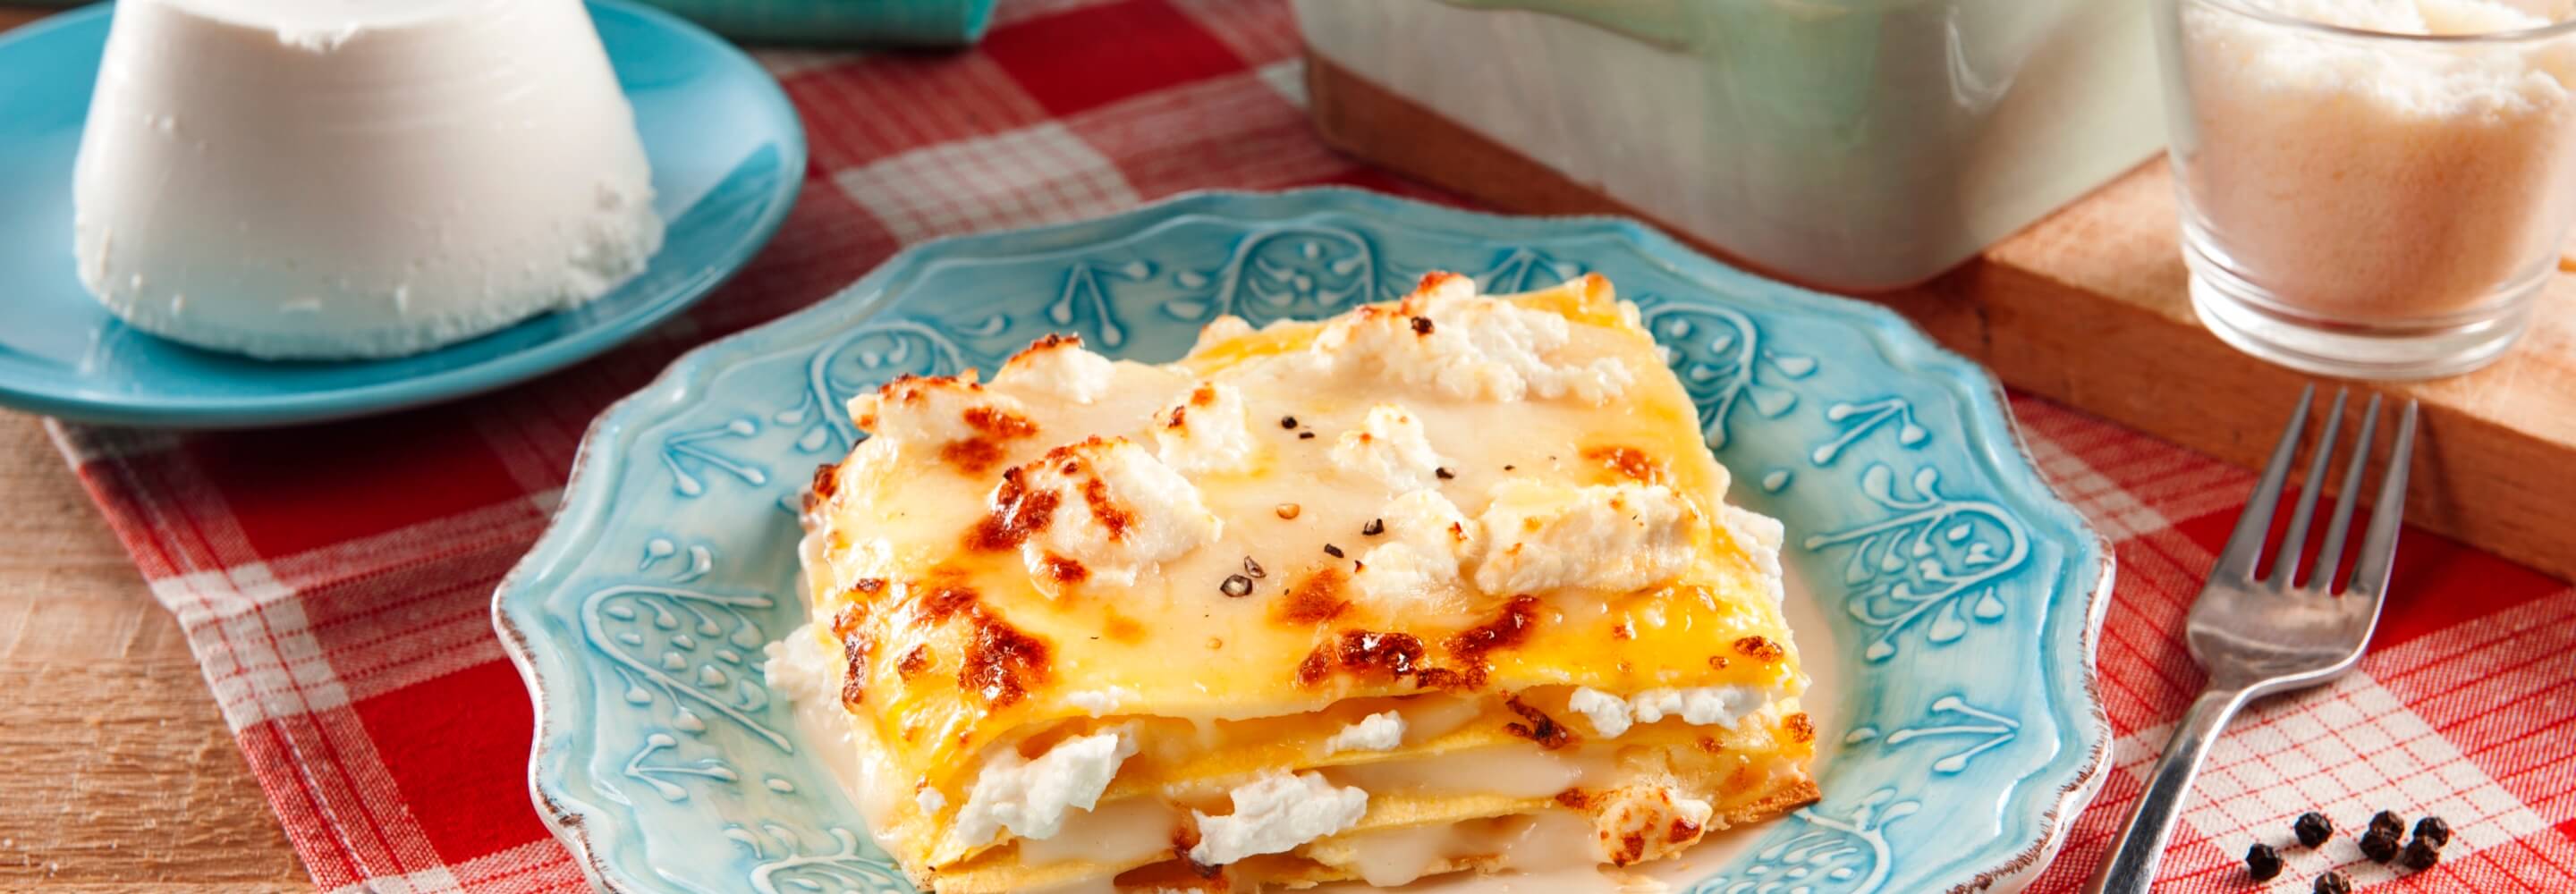 Vier-Käse-Lasagne